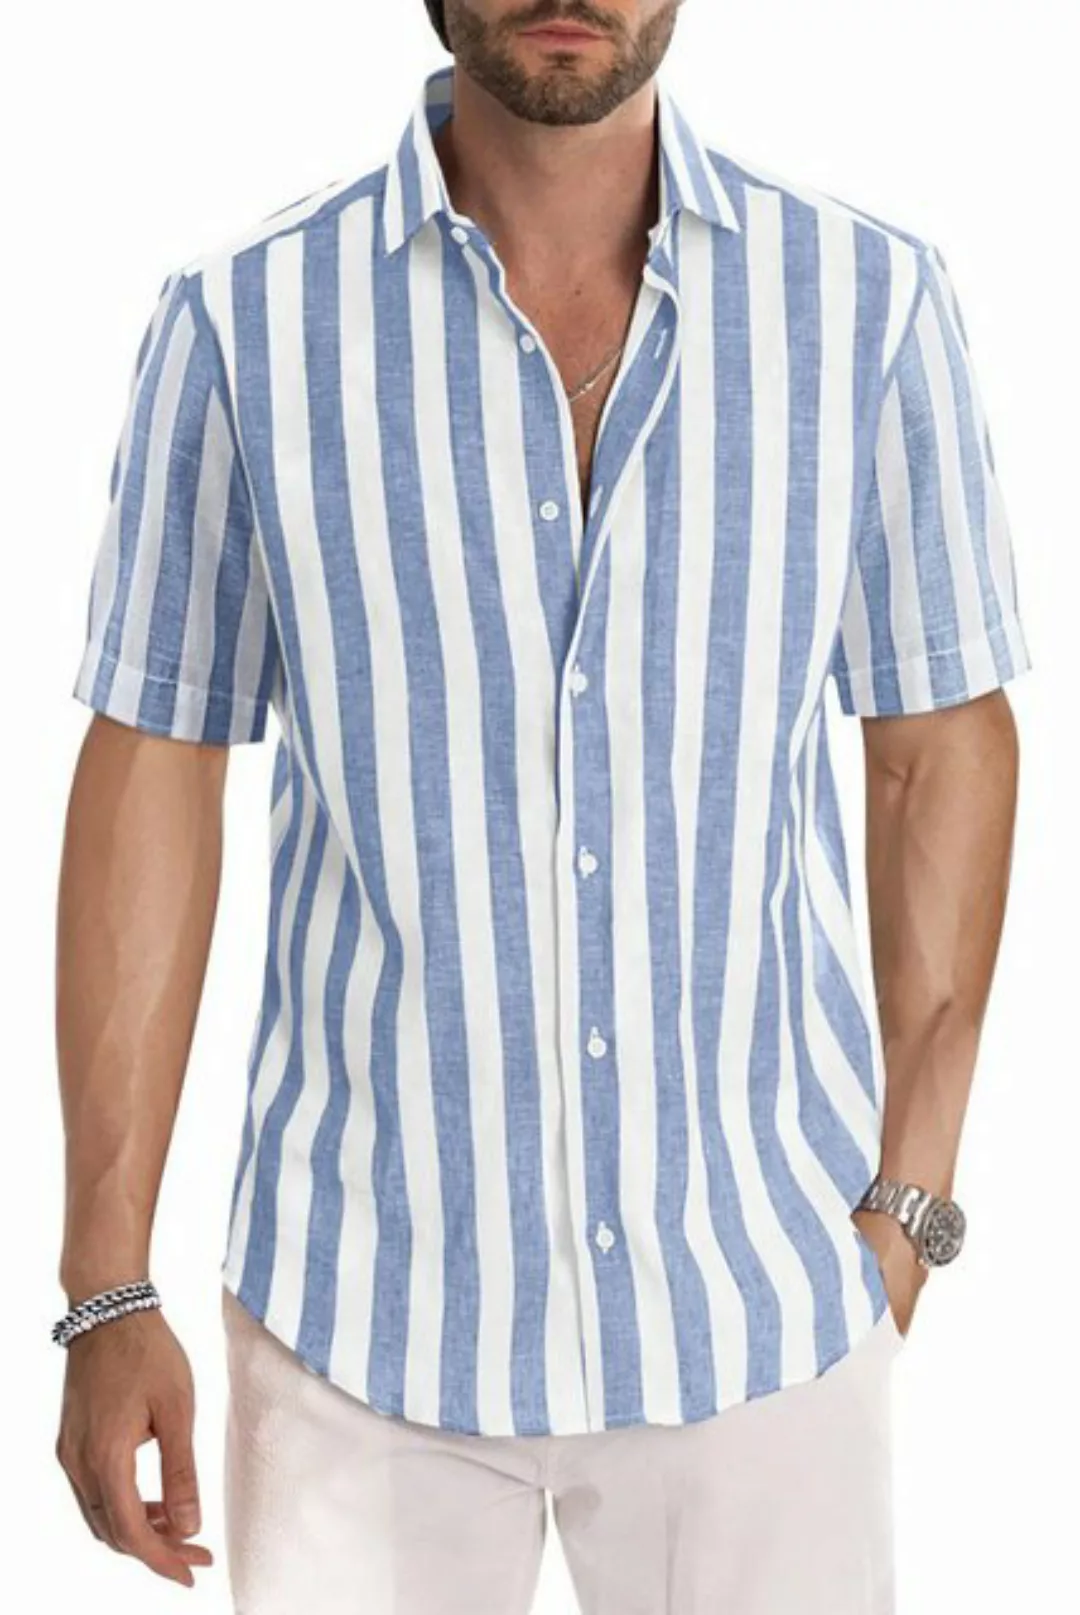 ZWY Sweatponcho Stilvolles, kurzärmliges, gestreiftes Hemd mit Knöpfen für günstig online kaufen